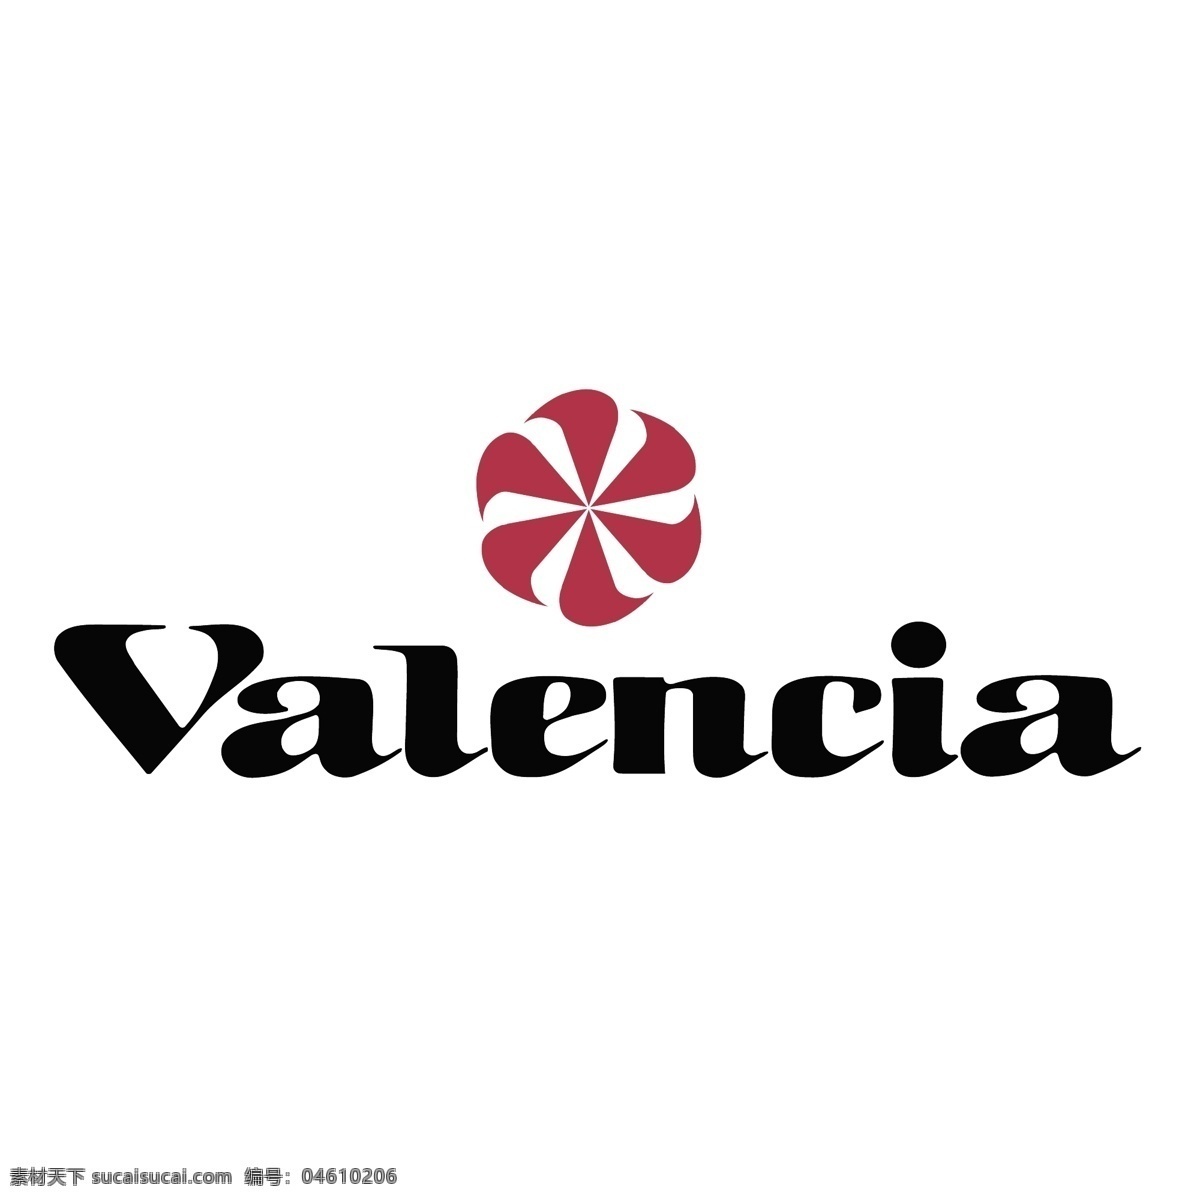 瓦伦西亚 足球 俱乐部 矢量 载体 西班牙 向量 矢量图 建筑家居